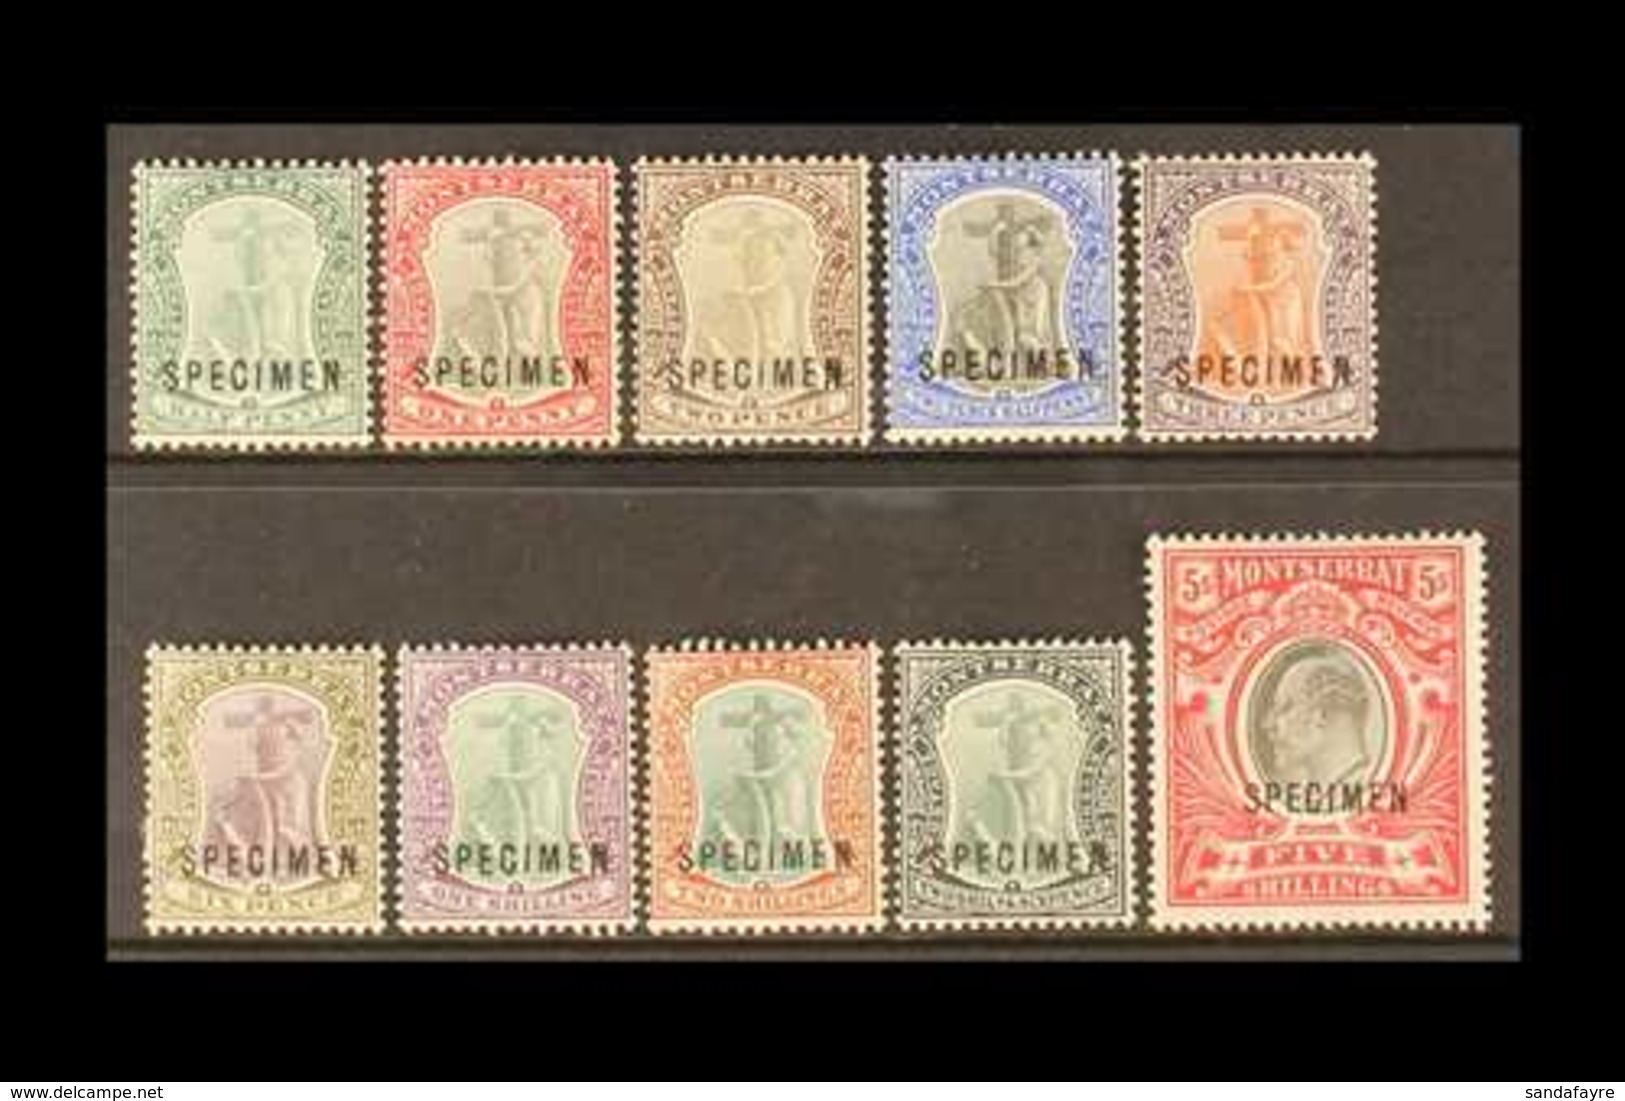 1903 - SPECIMEN KEVII Complete Set, CA Wmk, Overprinted "SPECIMEN", SG 14s/23s, Very Fine Mint (10 Stamps) For More Imag - Montserrat